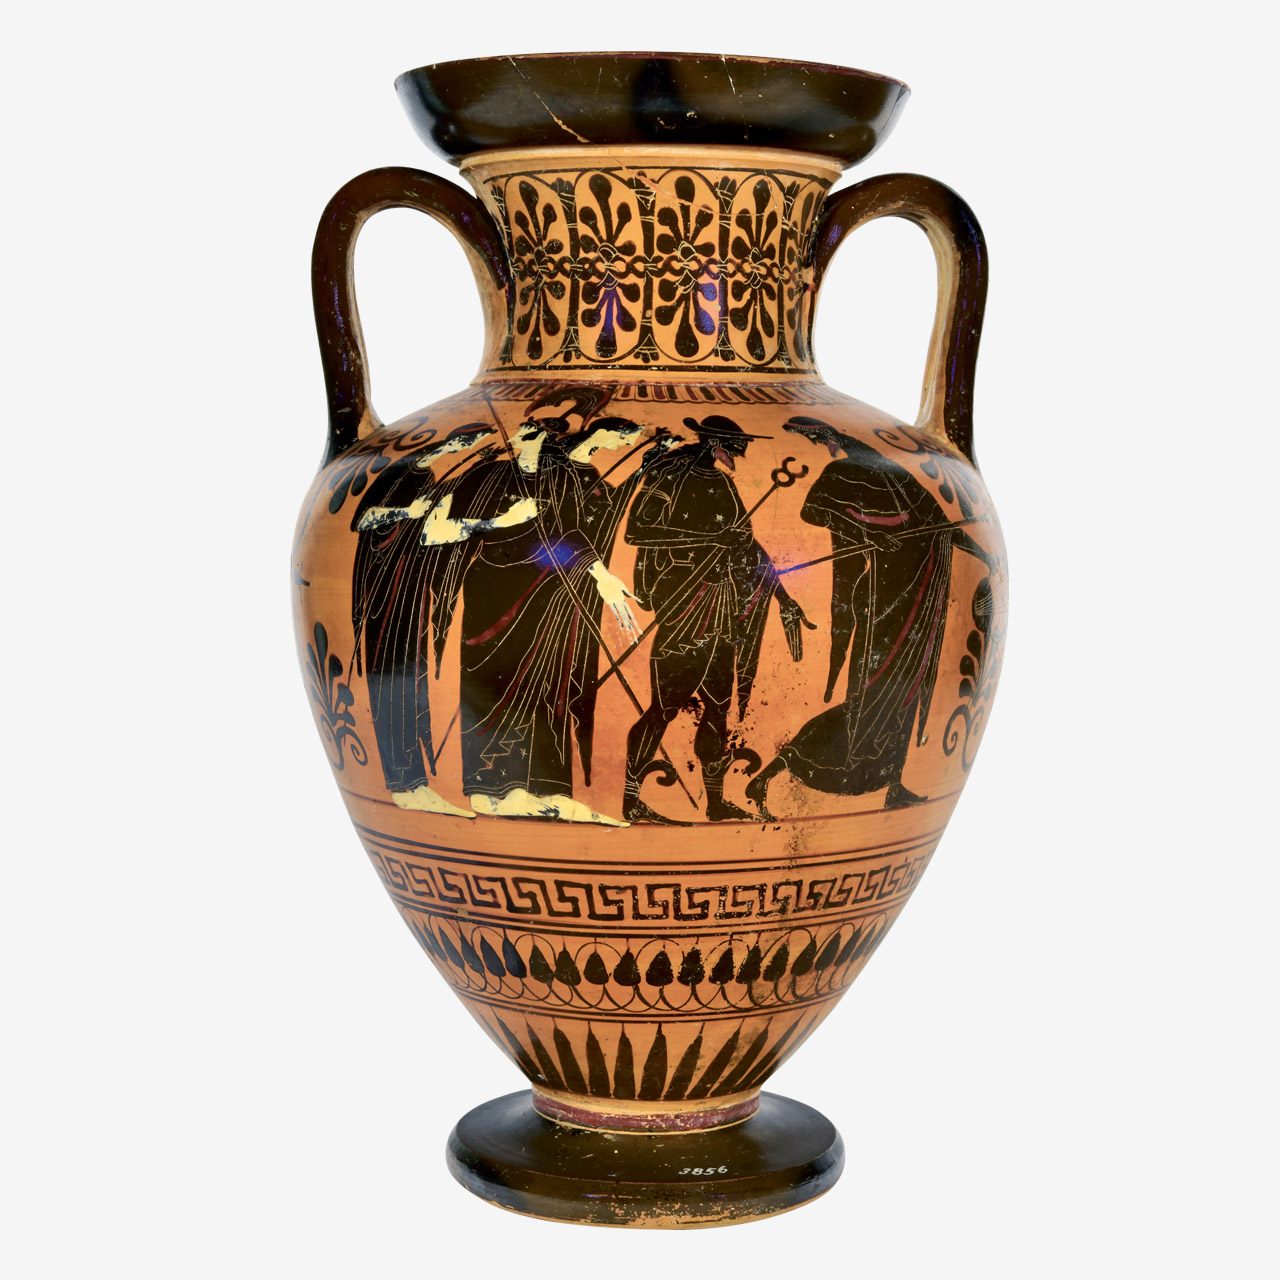 Πήλινος μελανόμορφος αμφορέας με την «Κρίση του Πάριδος», του πιο γνωστού διαγωνισμού ομορφιάς της αρχαιότητας ανάμεσα στην Ήρα, την Αθηνά και την Αφροδίτη.